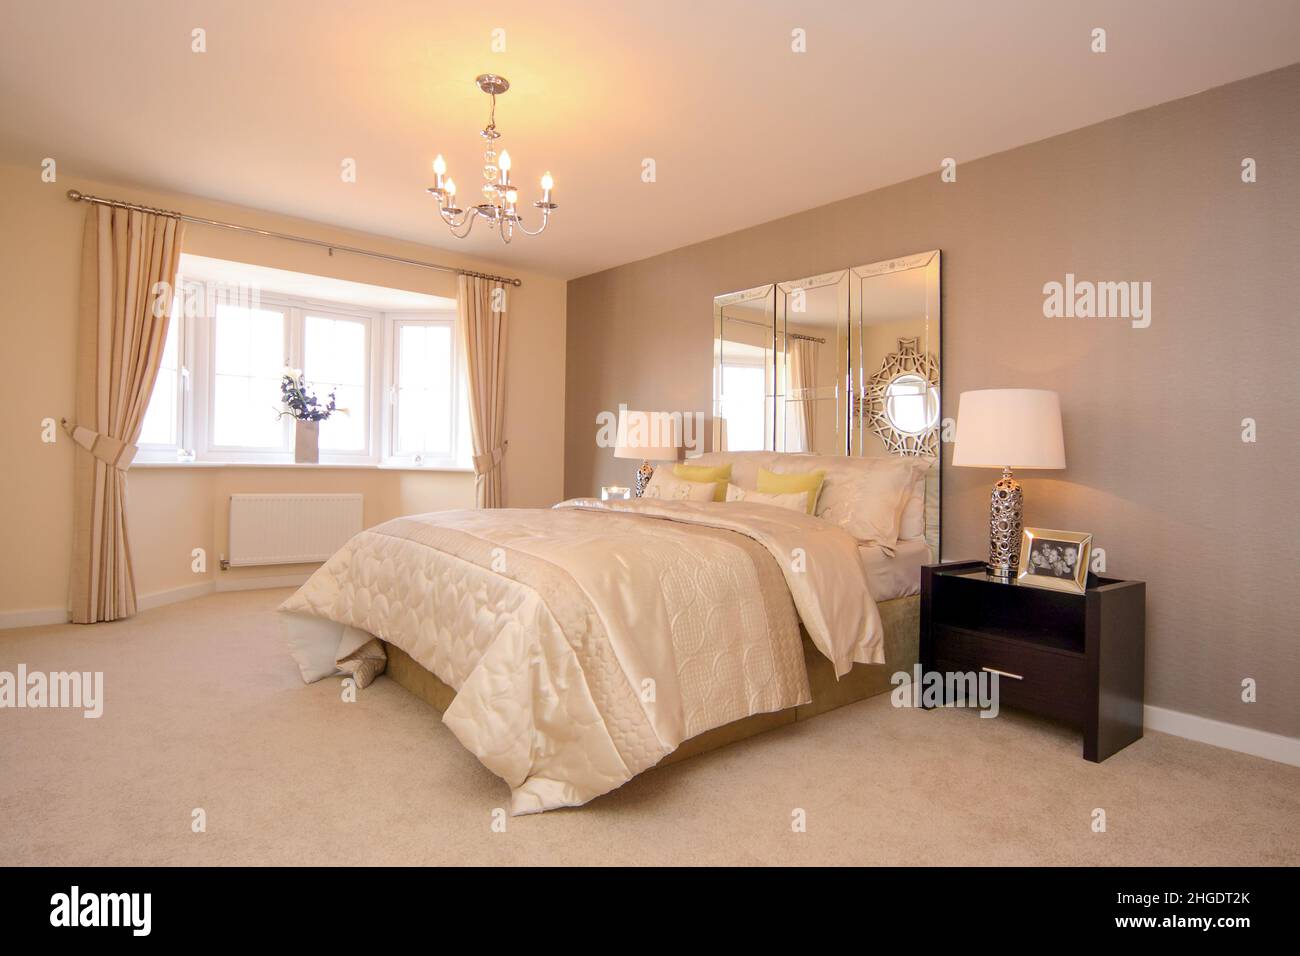 Hauptschlafzimmer in cremefarbenen neutralen Farben, beigefarbener Teppich, Kingsize-Doppelbett, Bettüberwurf, Spiegelkopfteil, Nachttischlampen, Erkerfenster. Stockfoto